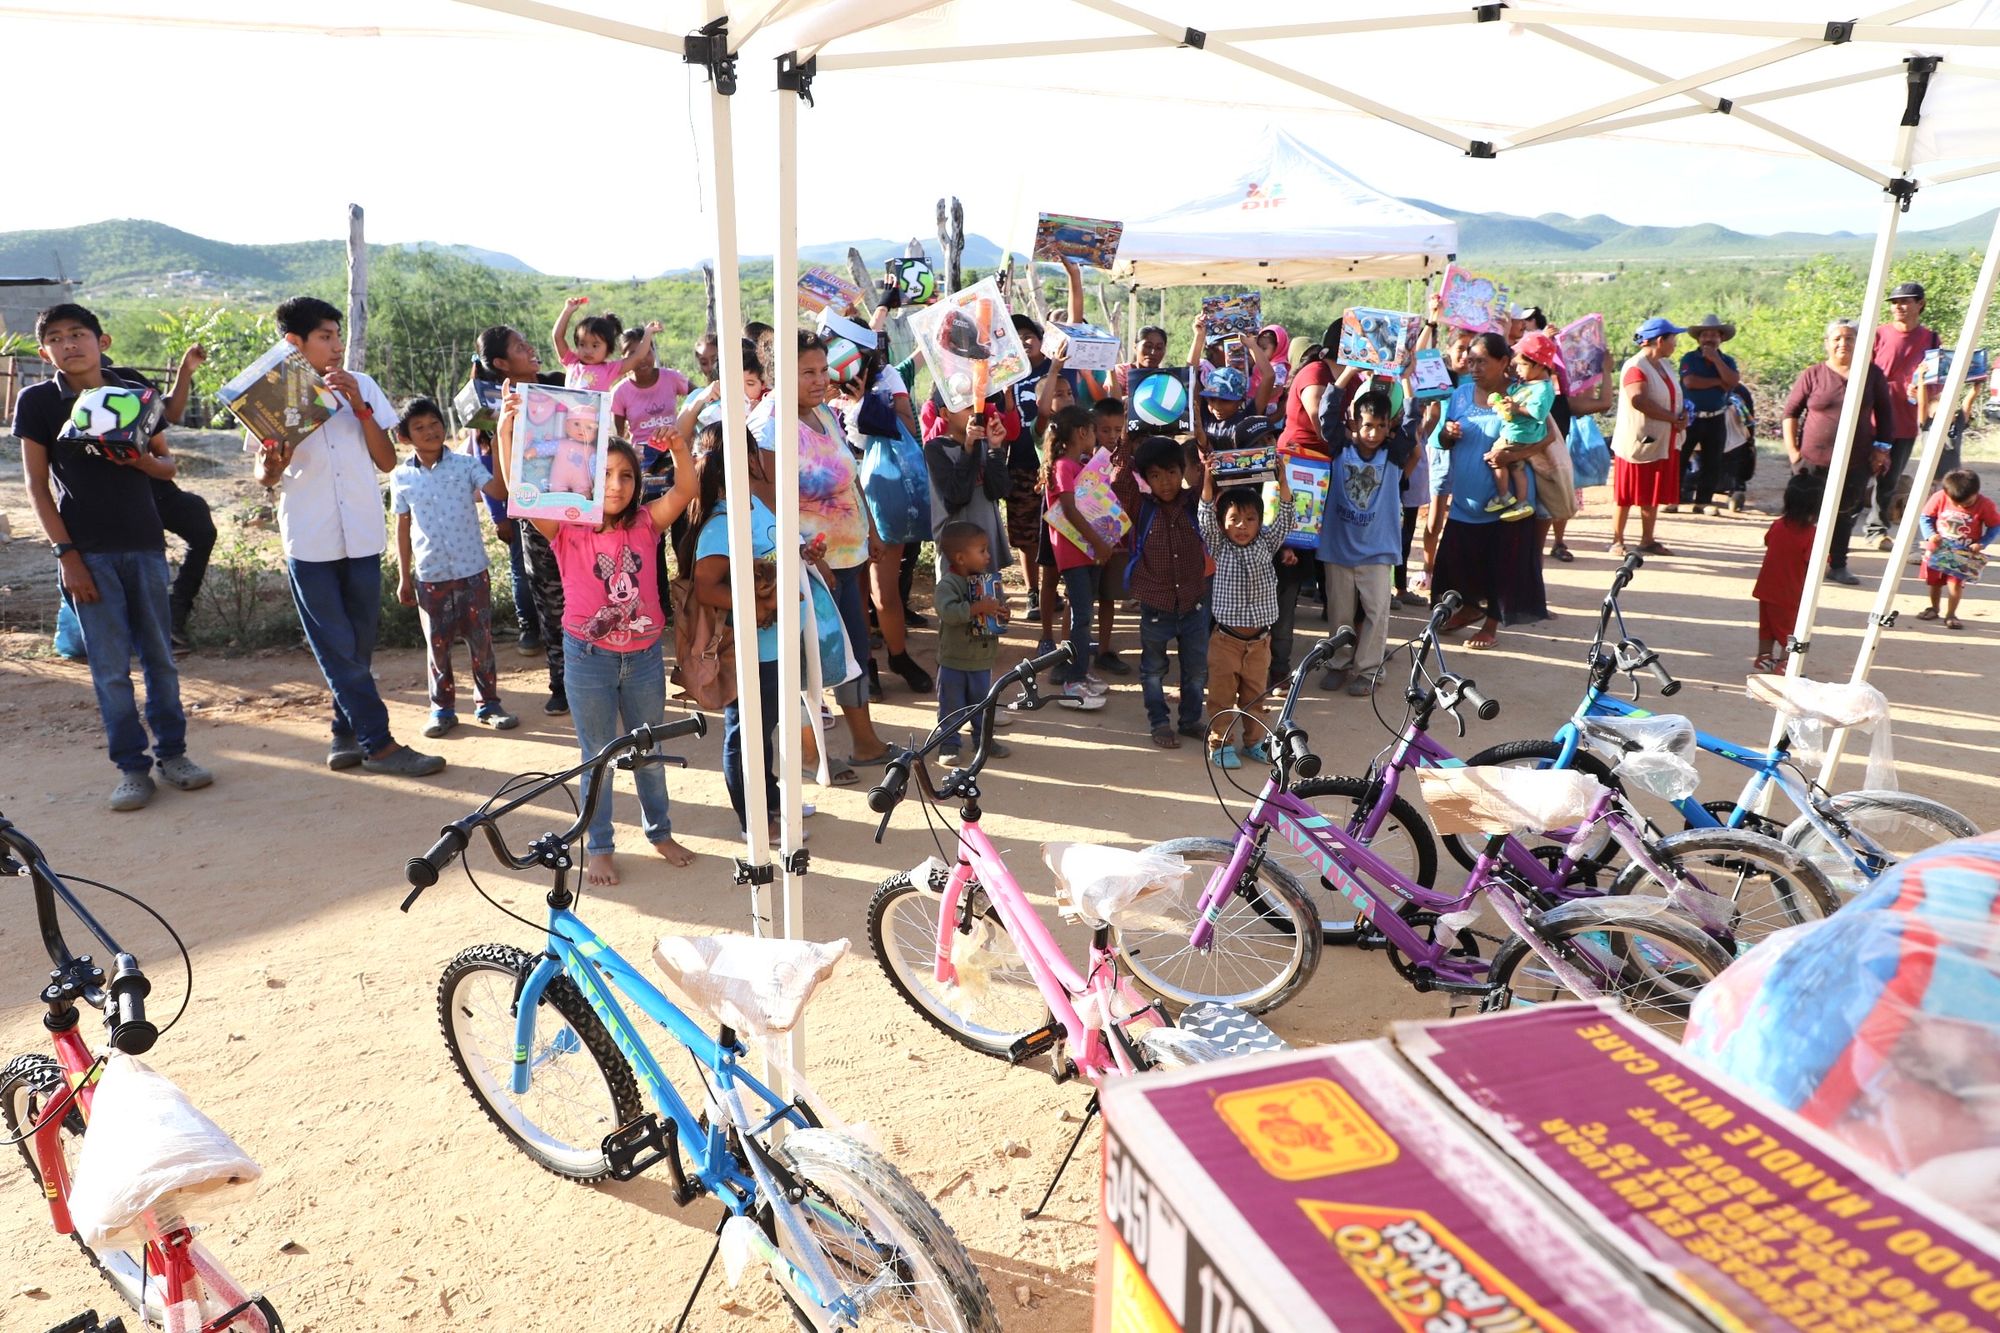 Entrega DIF Municipal La Paz cobijas y juguetes en El Pescadero